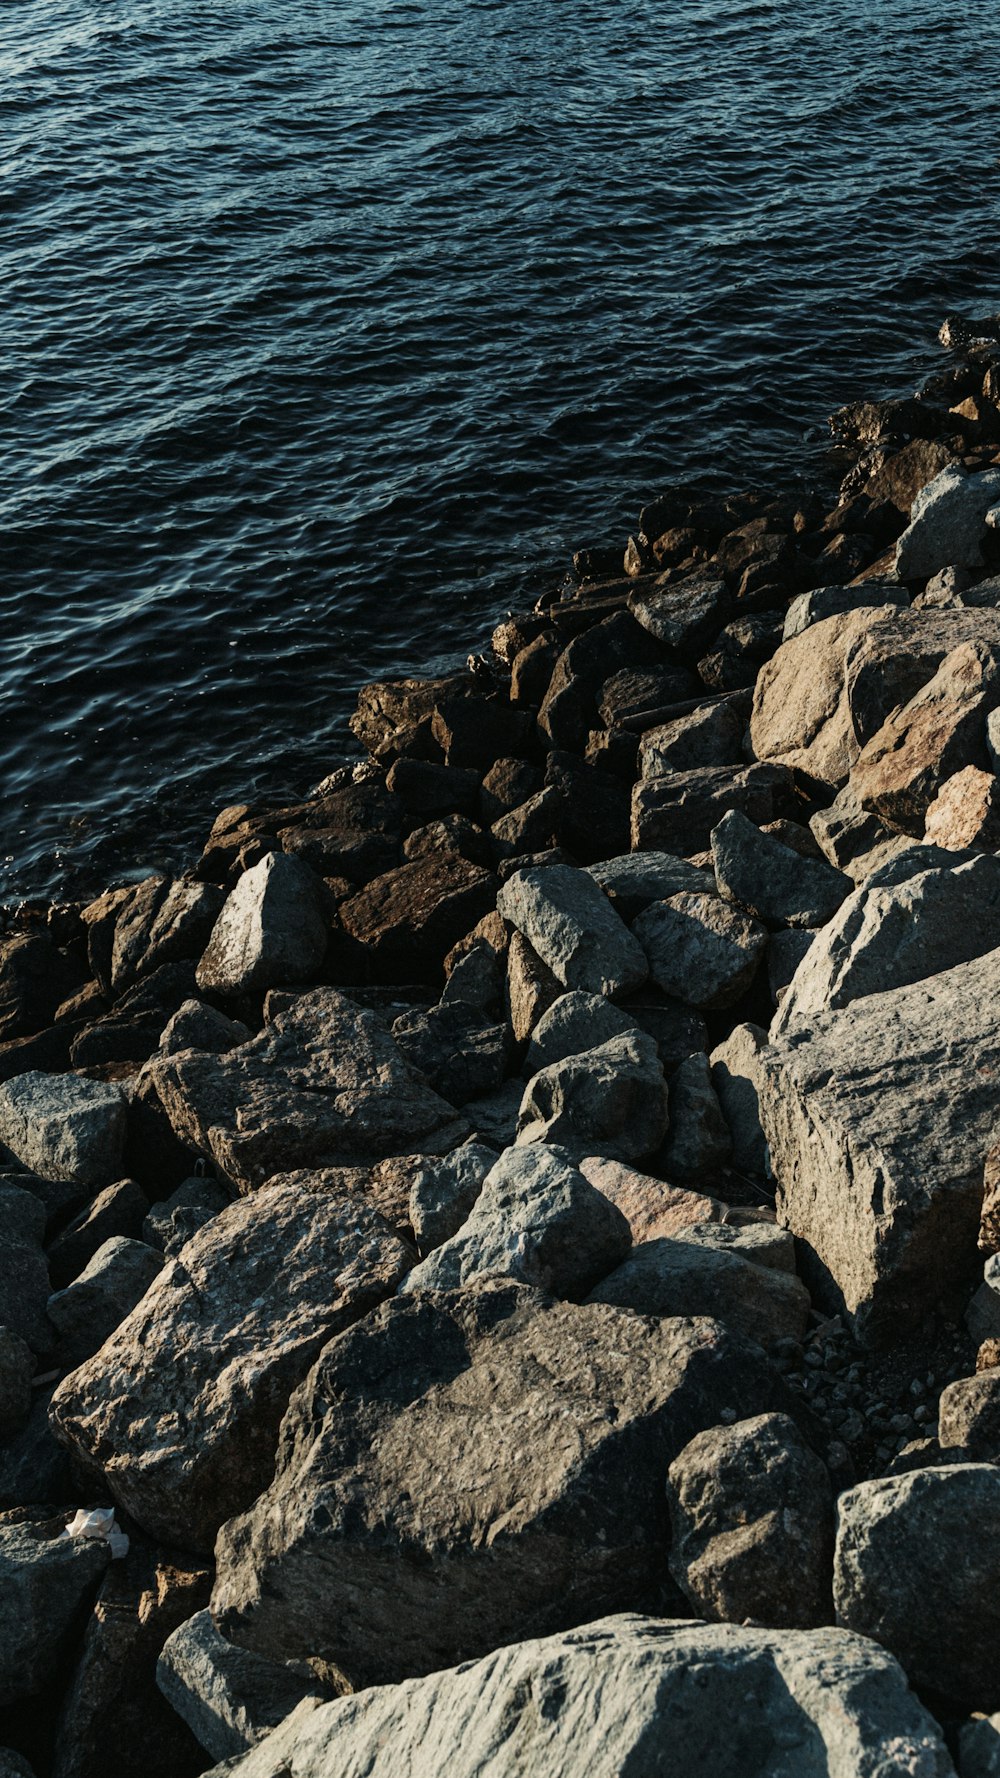 Un oiseau est assis sur les rochers au bord de l’eau